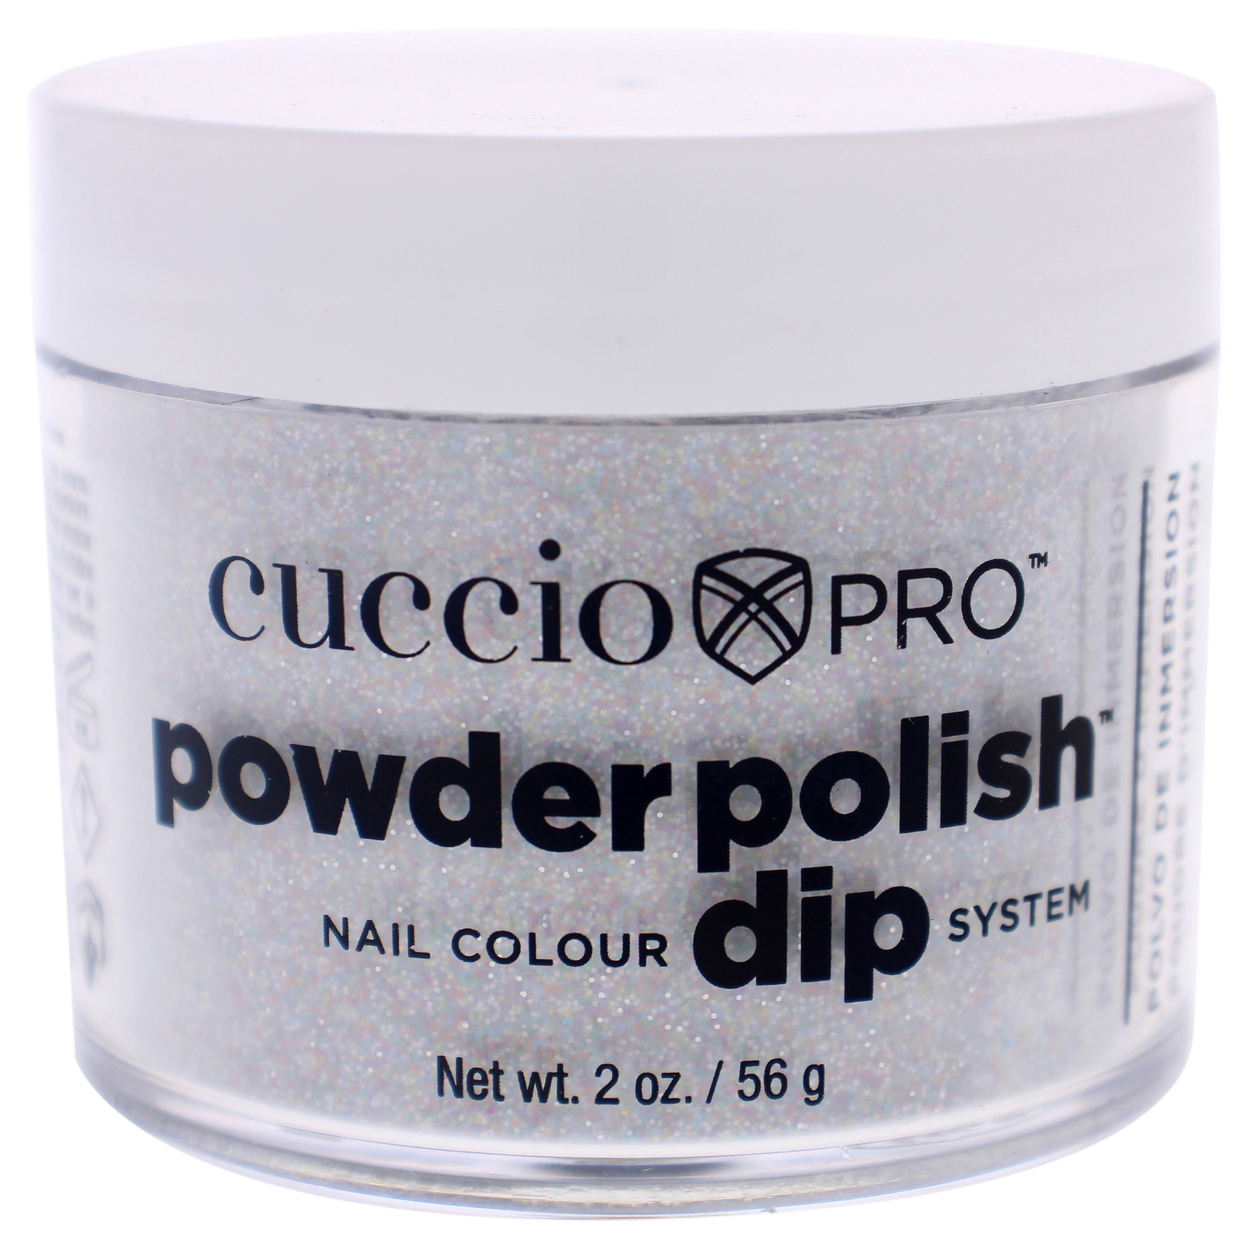 Cuccio Colour Pro Powder Polish Nail Colour Dip System - Multi Color Glitter Nail Powder 1.6 Oz